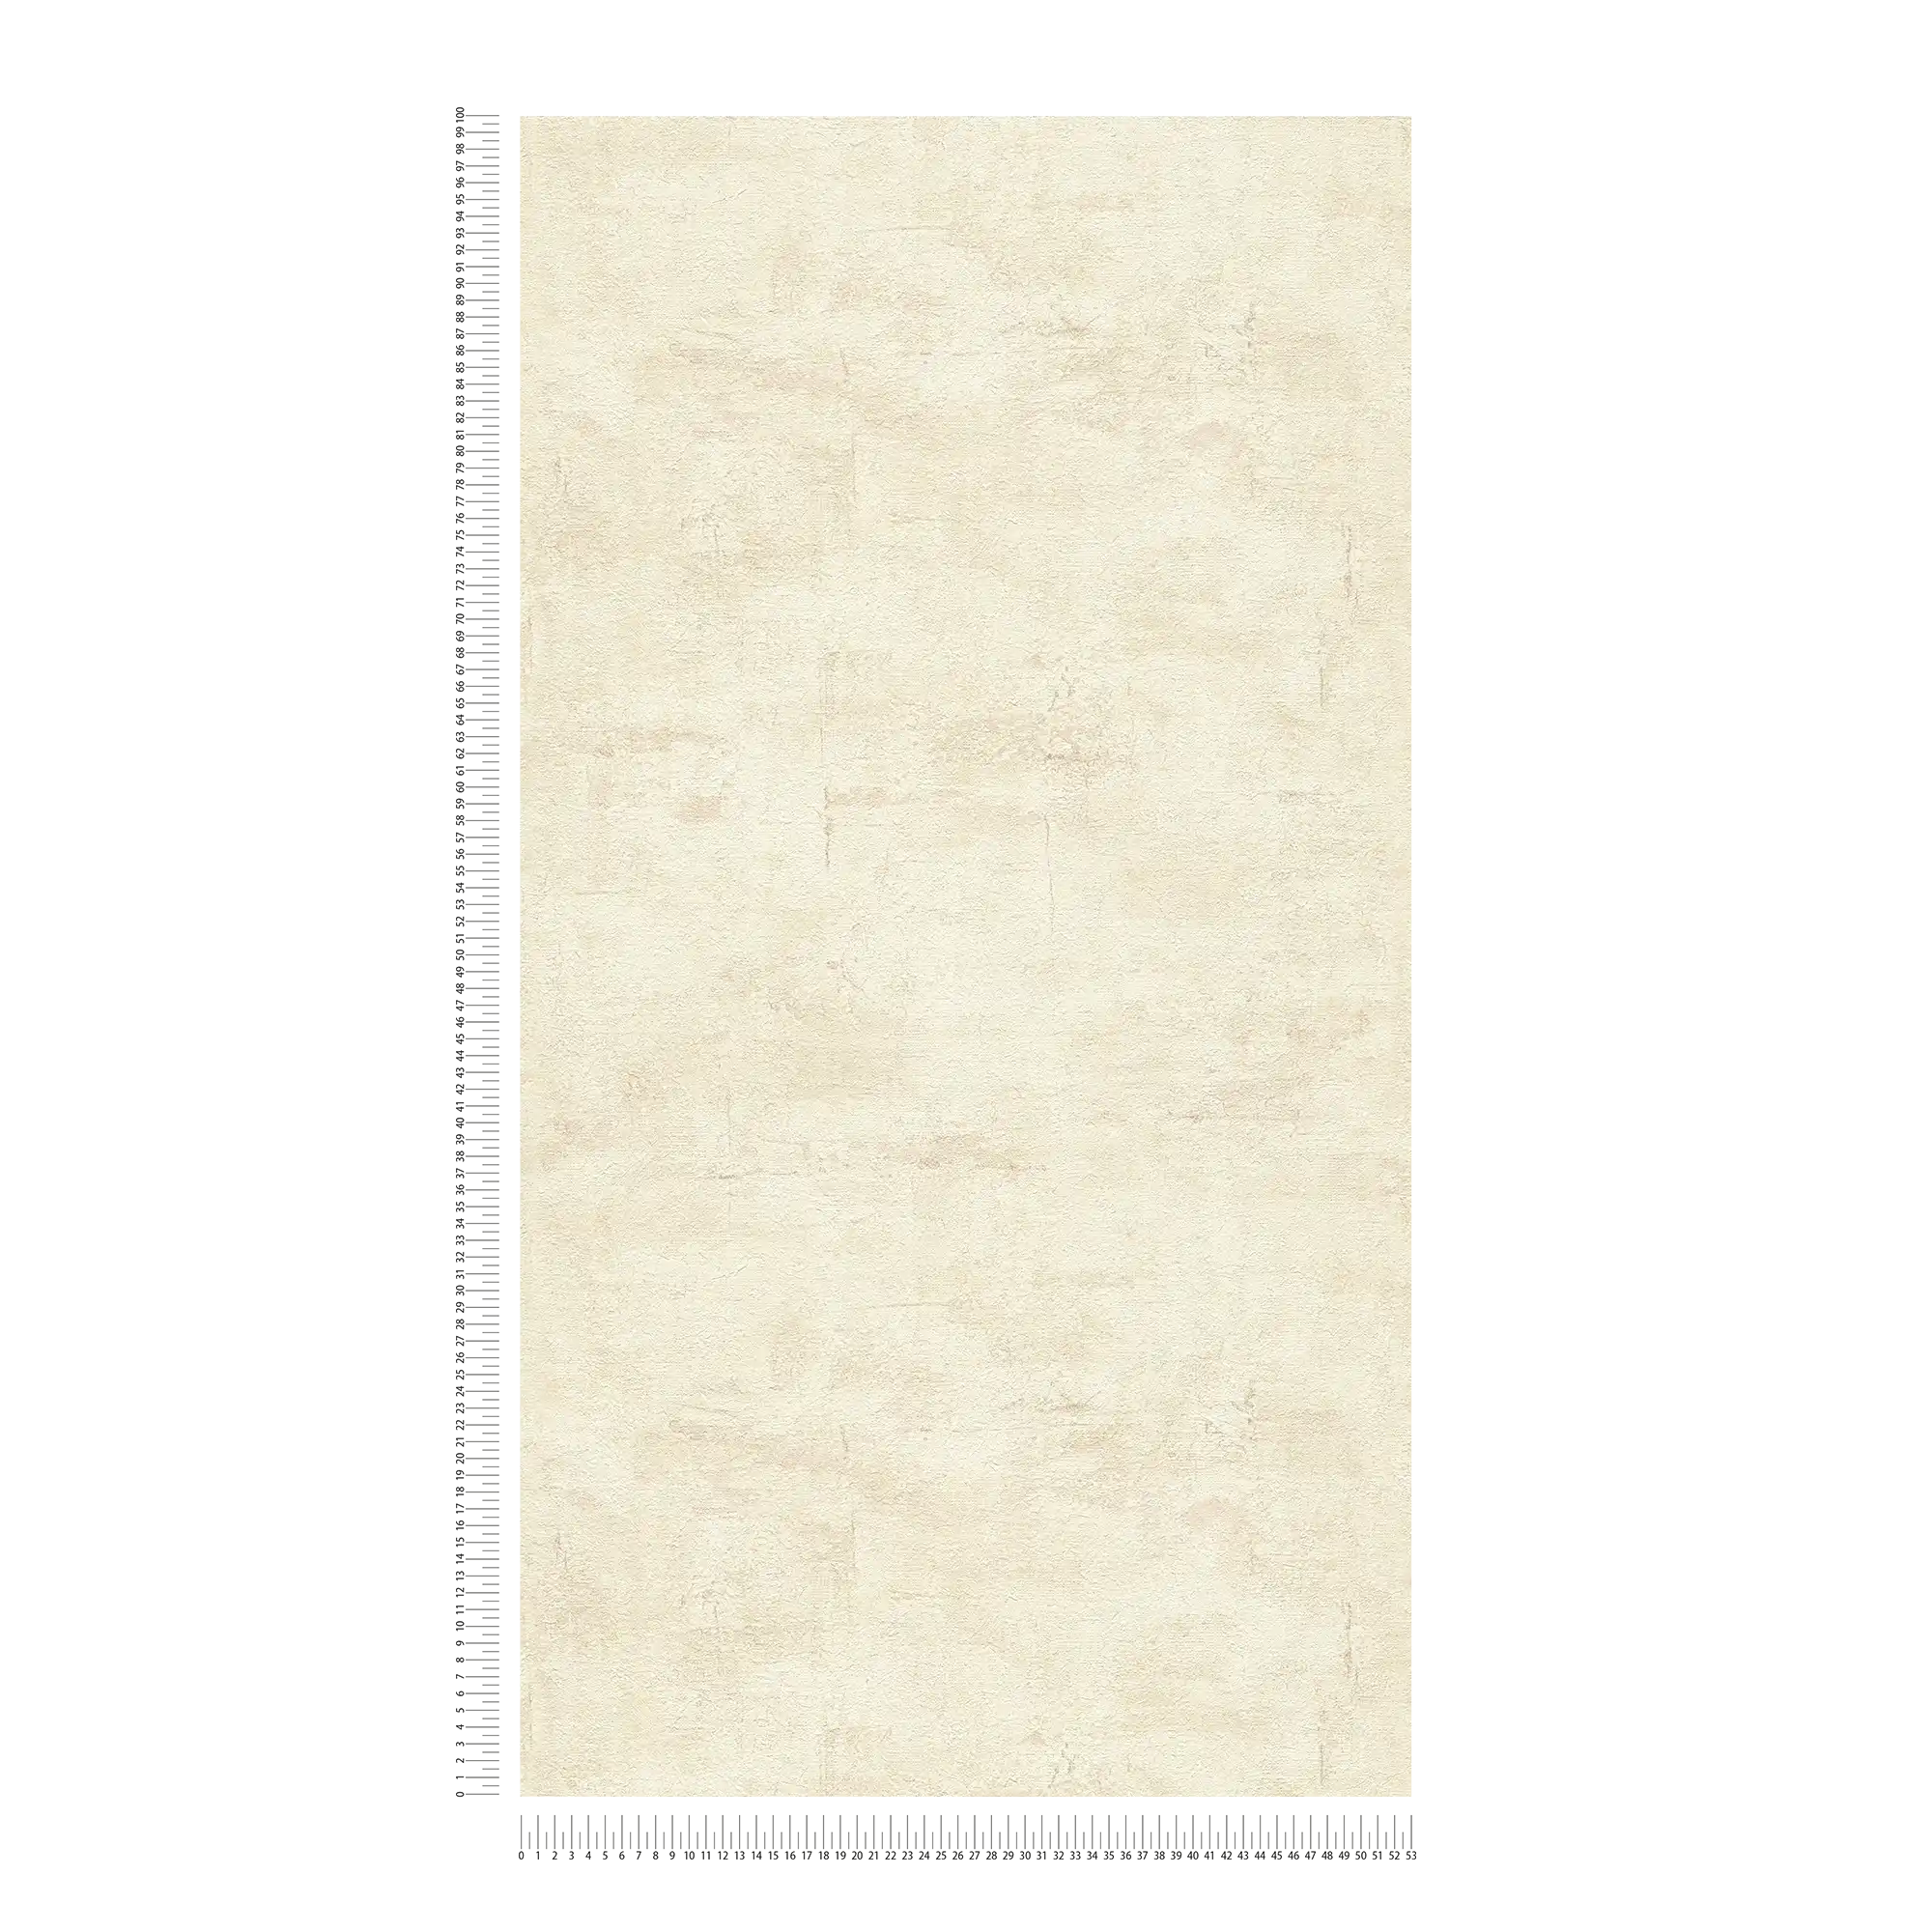             Carta da parati strutturata con aspetto intonaco beige chiaro - beige, marrone
        